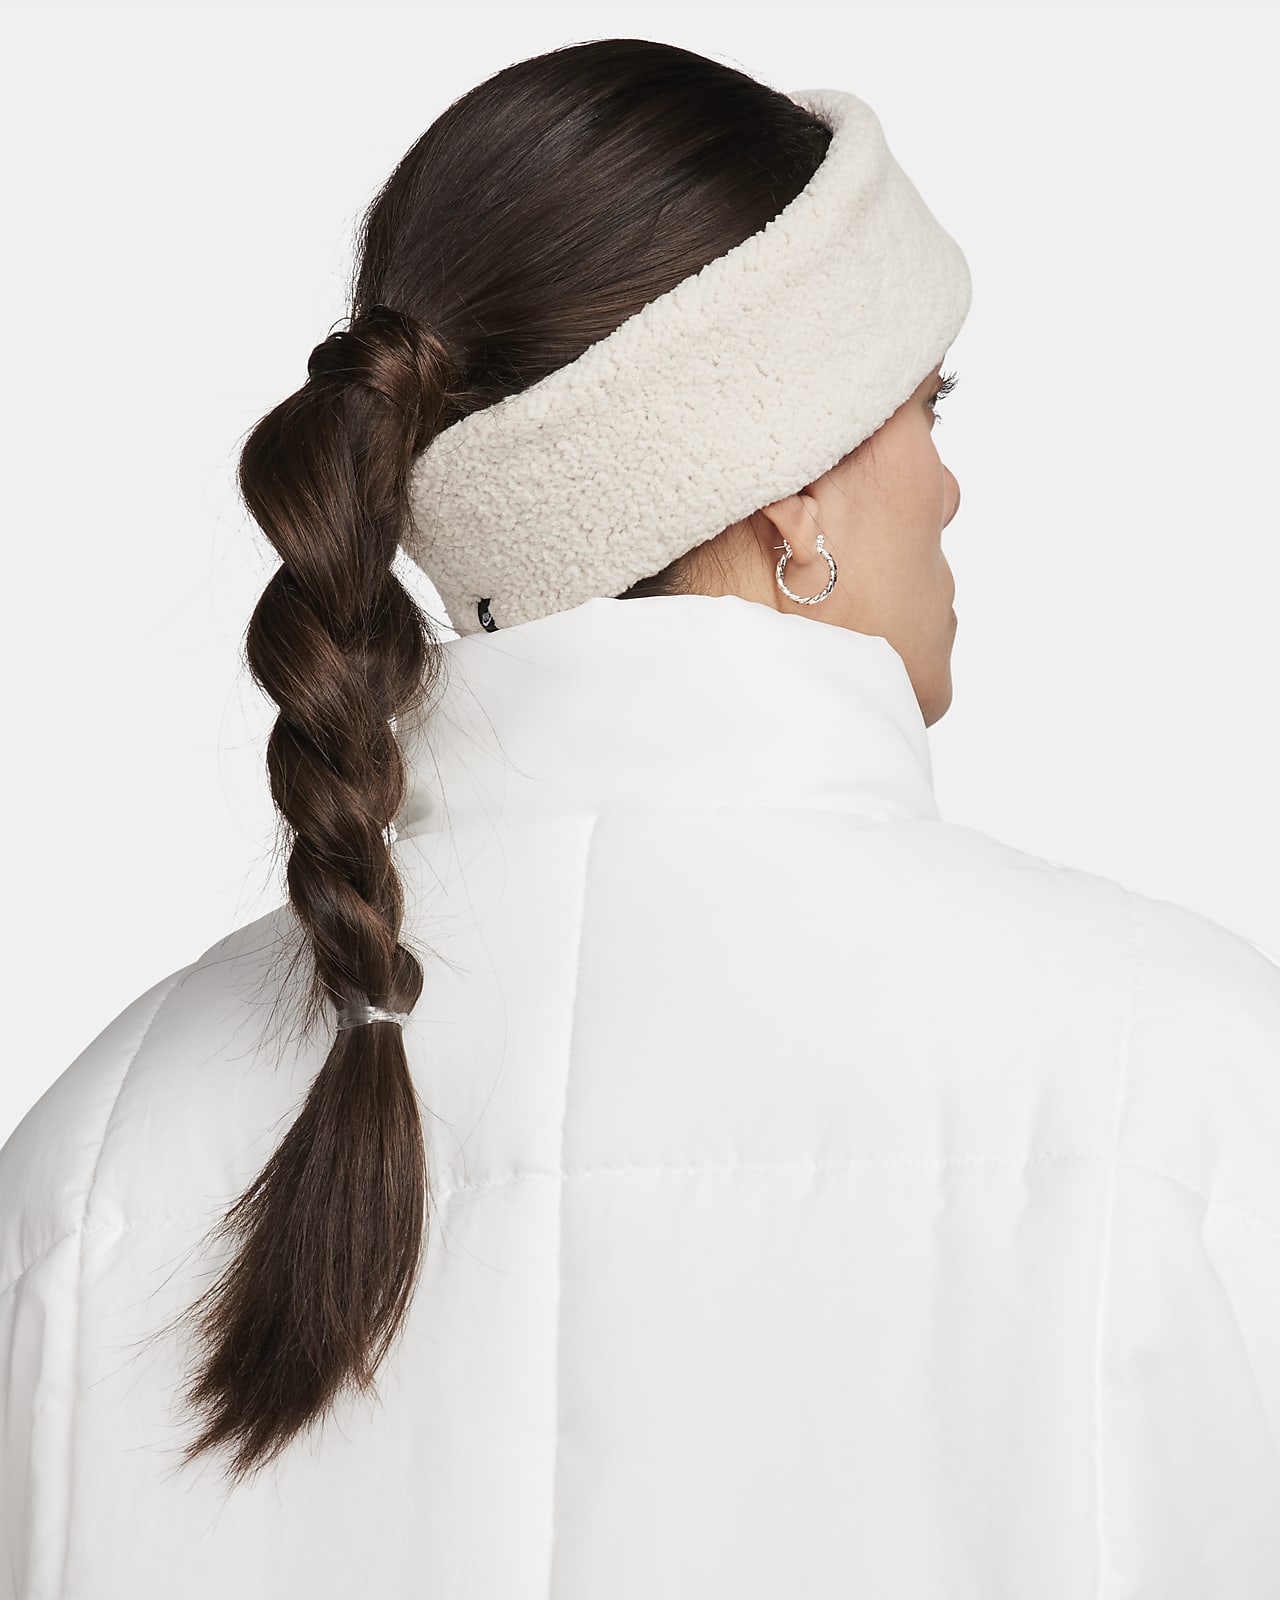 Women\'s Nike Headband. Fleece